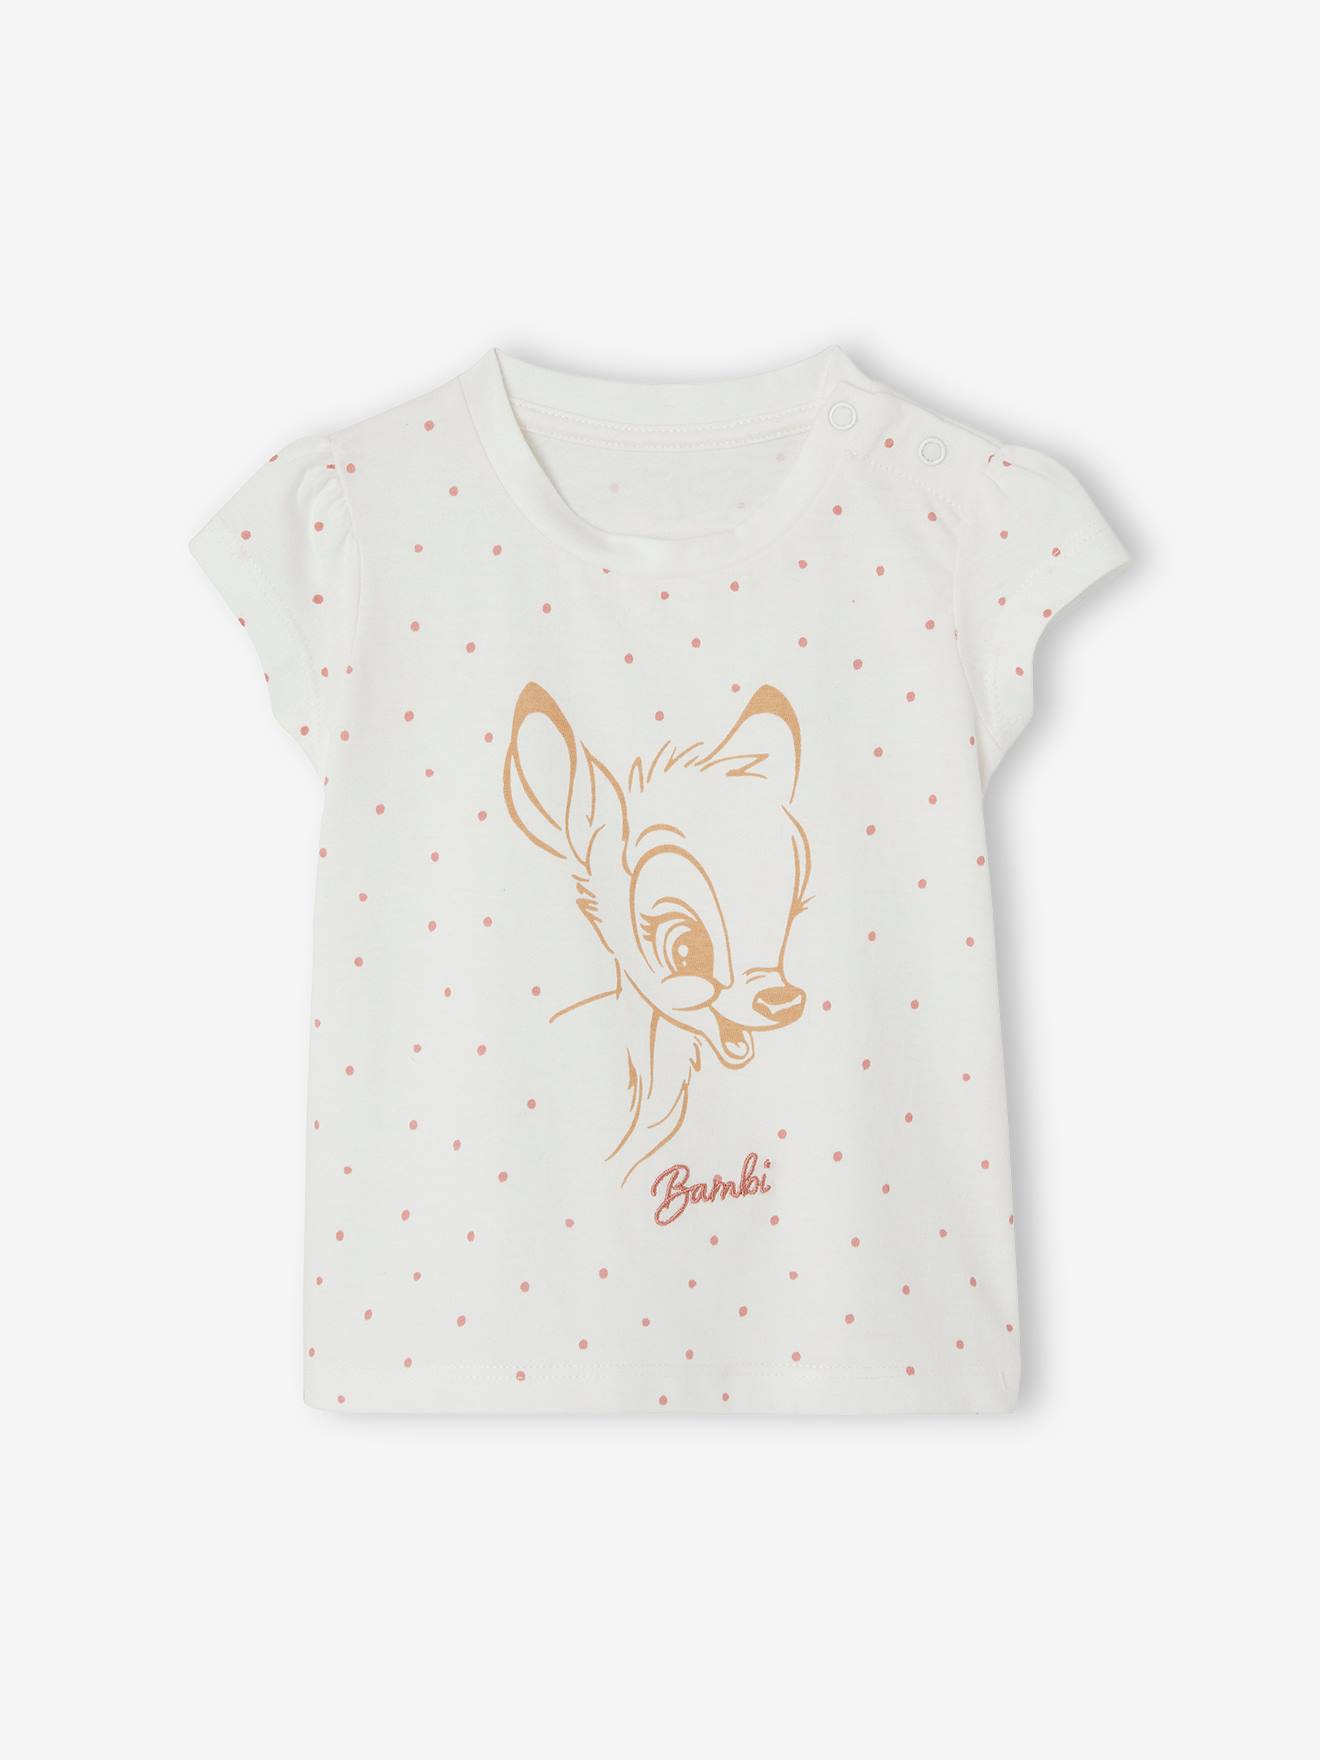 Mädchen Baby T-Shirt Disney BAMBI von Disney Animals